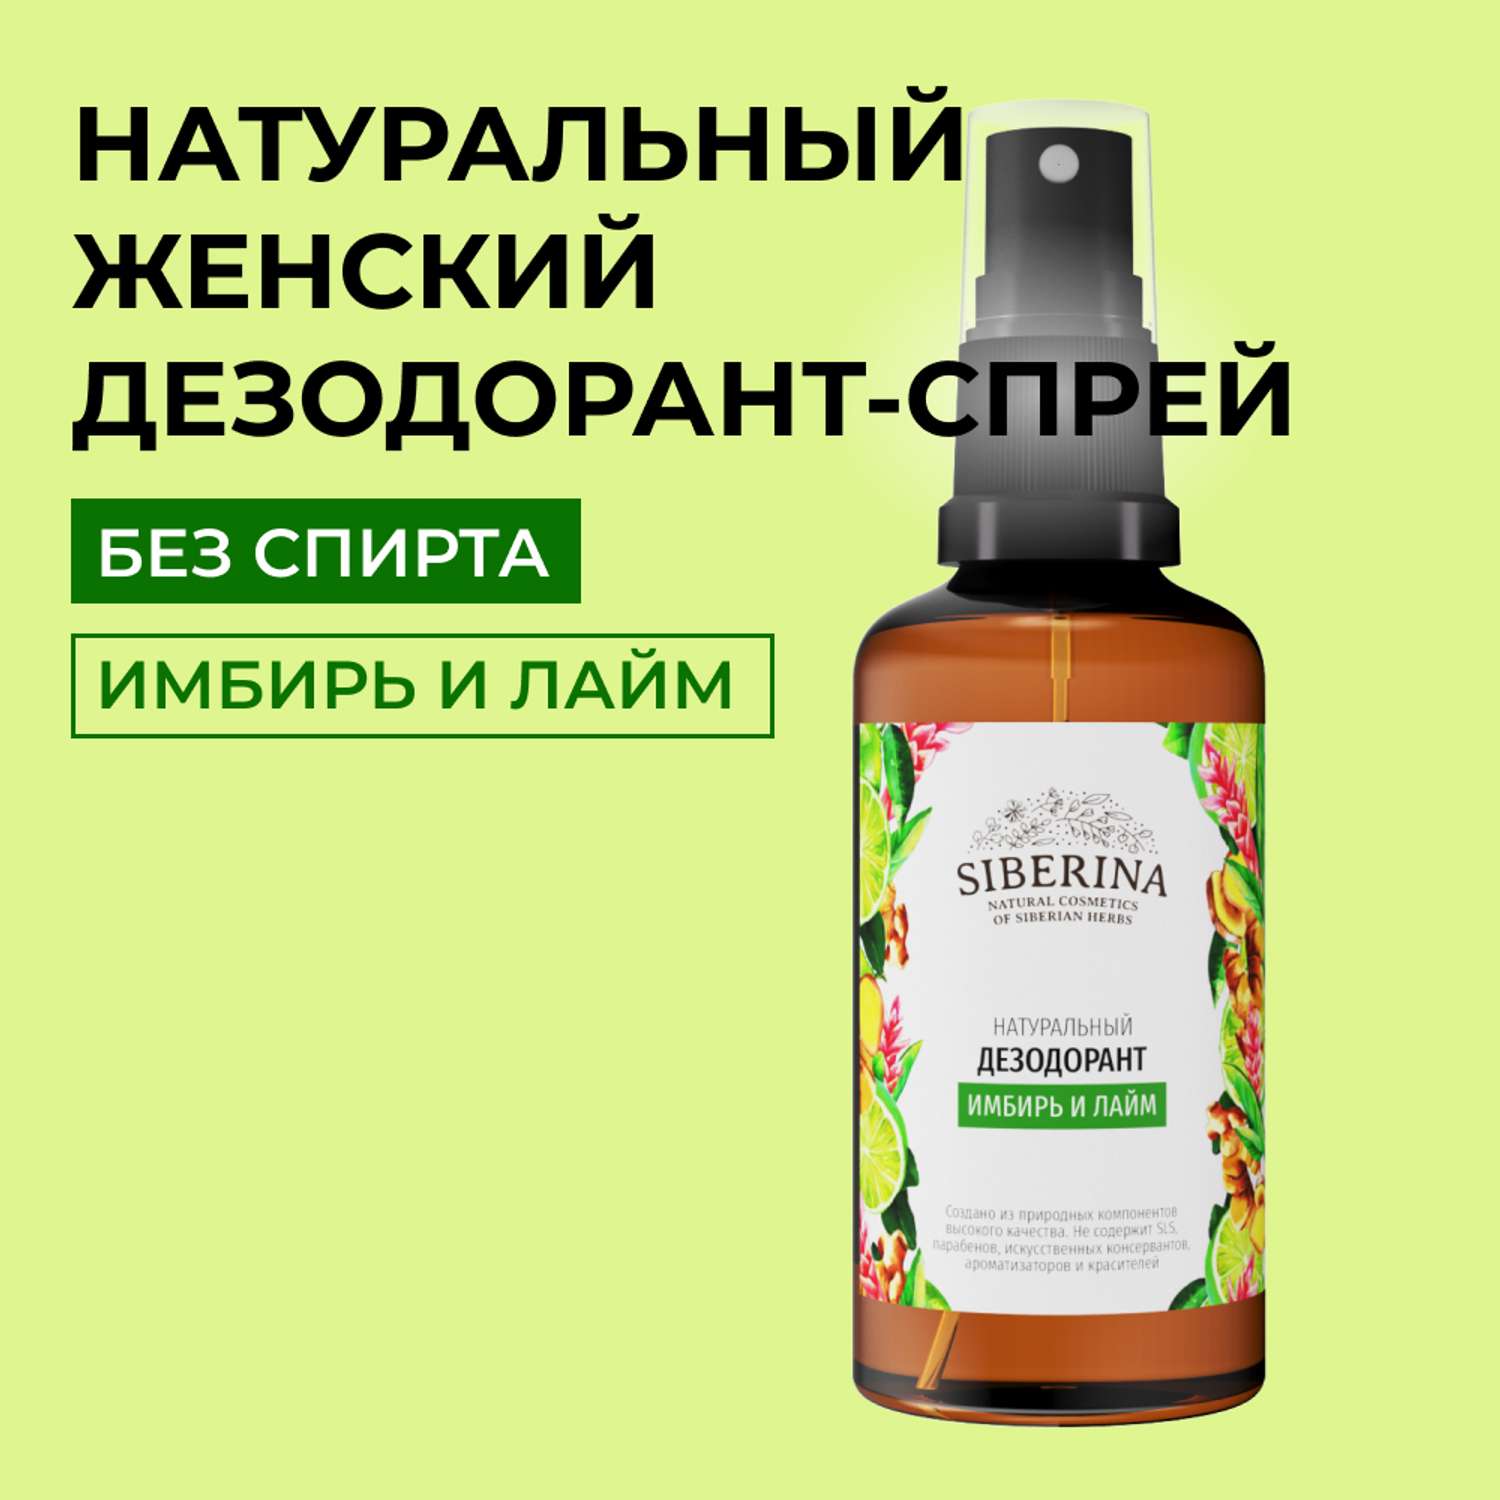 Дезодорант-спрей Siberina натуральный «Имбирь и лайм» для чувствительной кожи 50 мл - фото 1